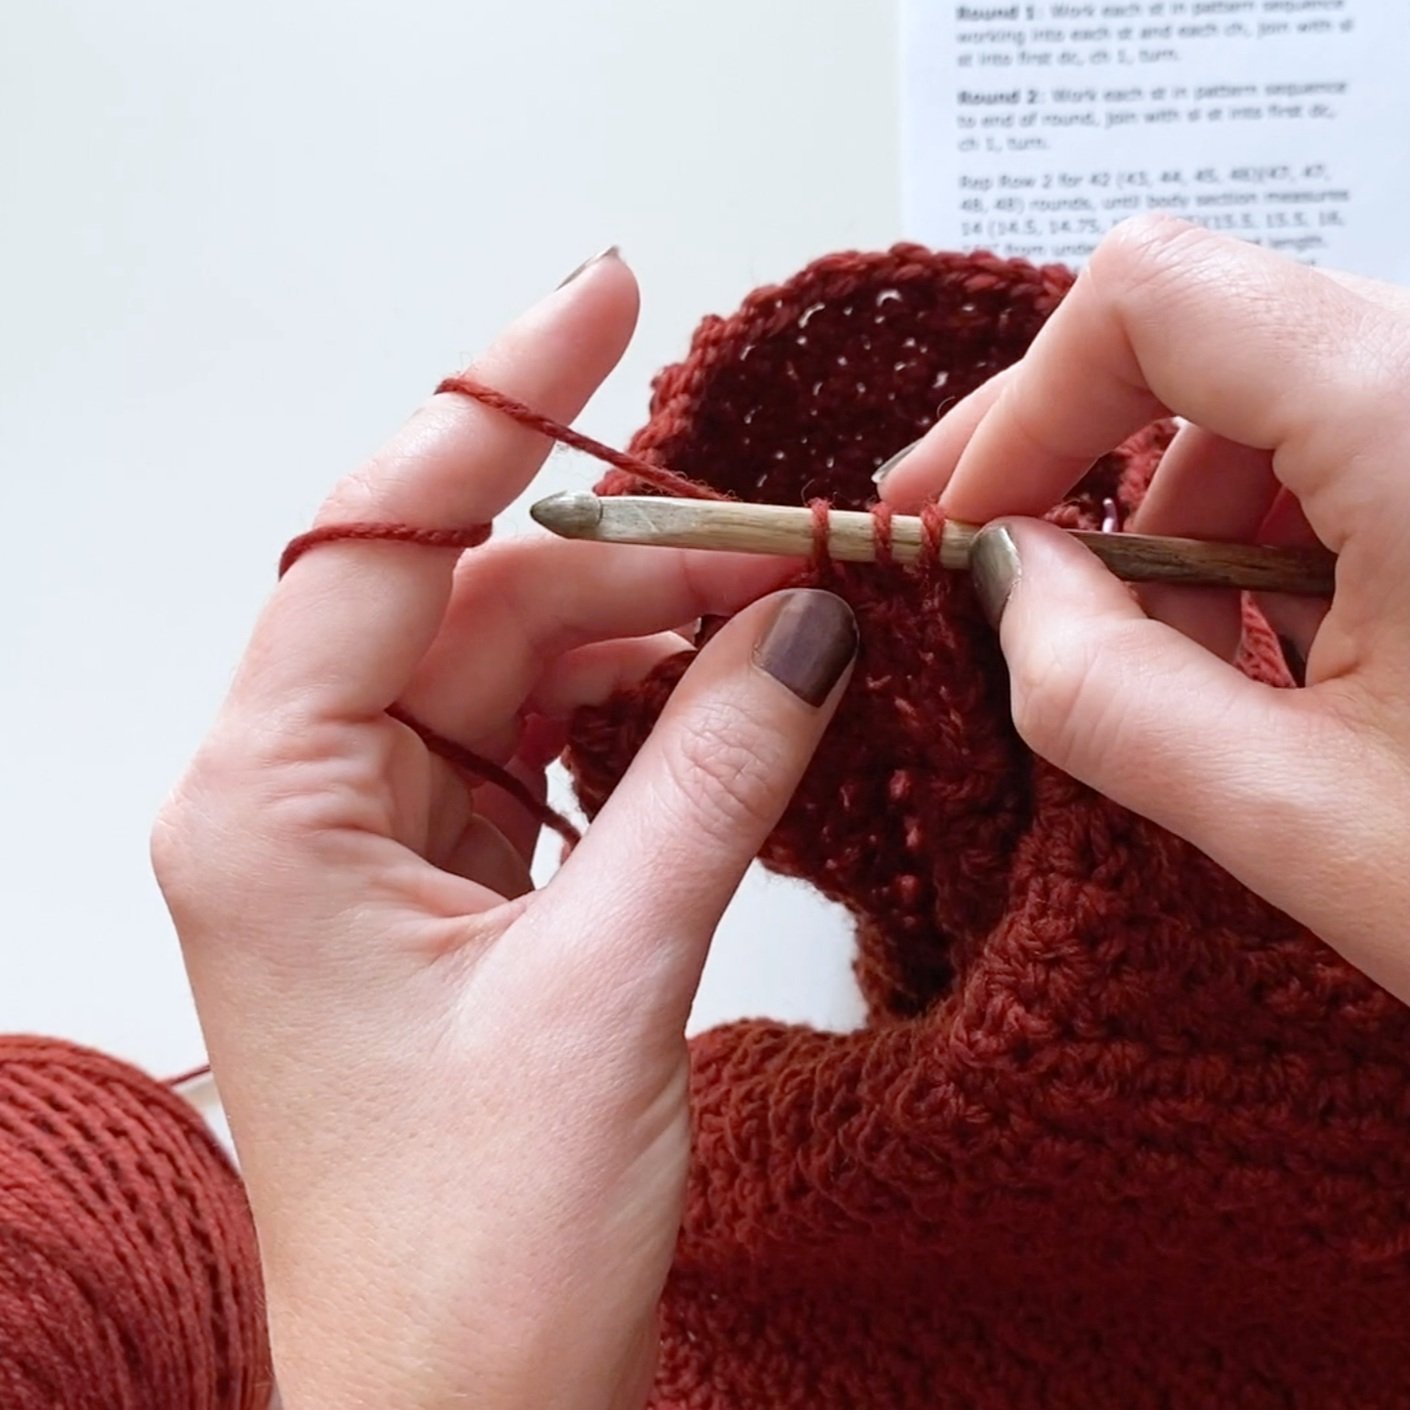 Beginning Crochet Supplies - Julie Measures